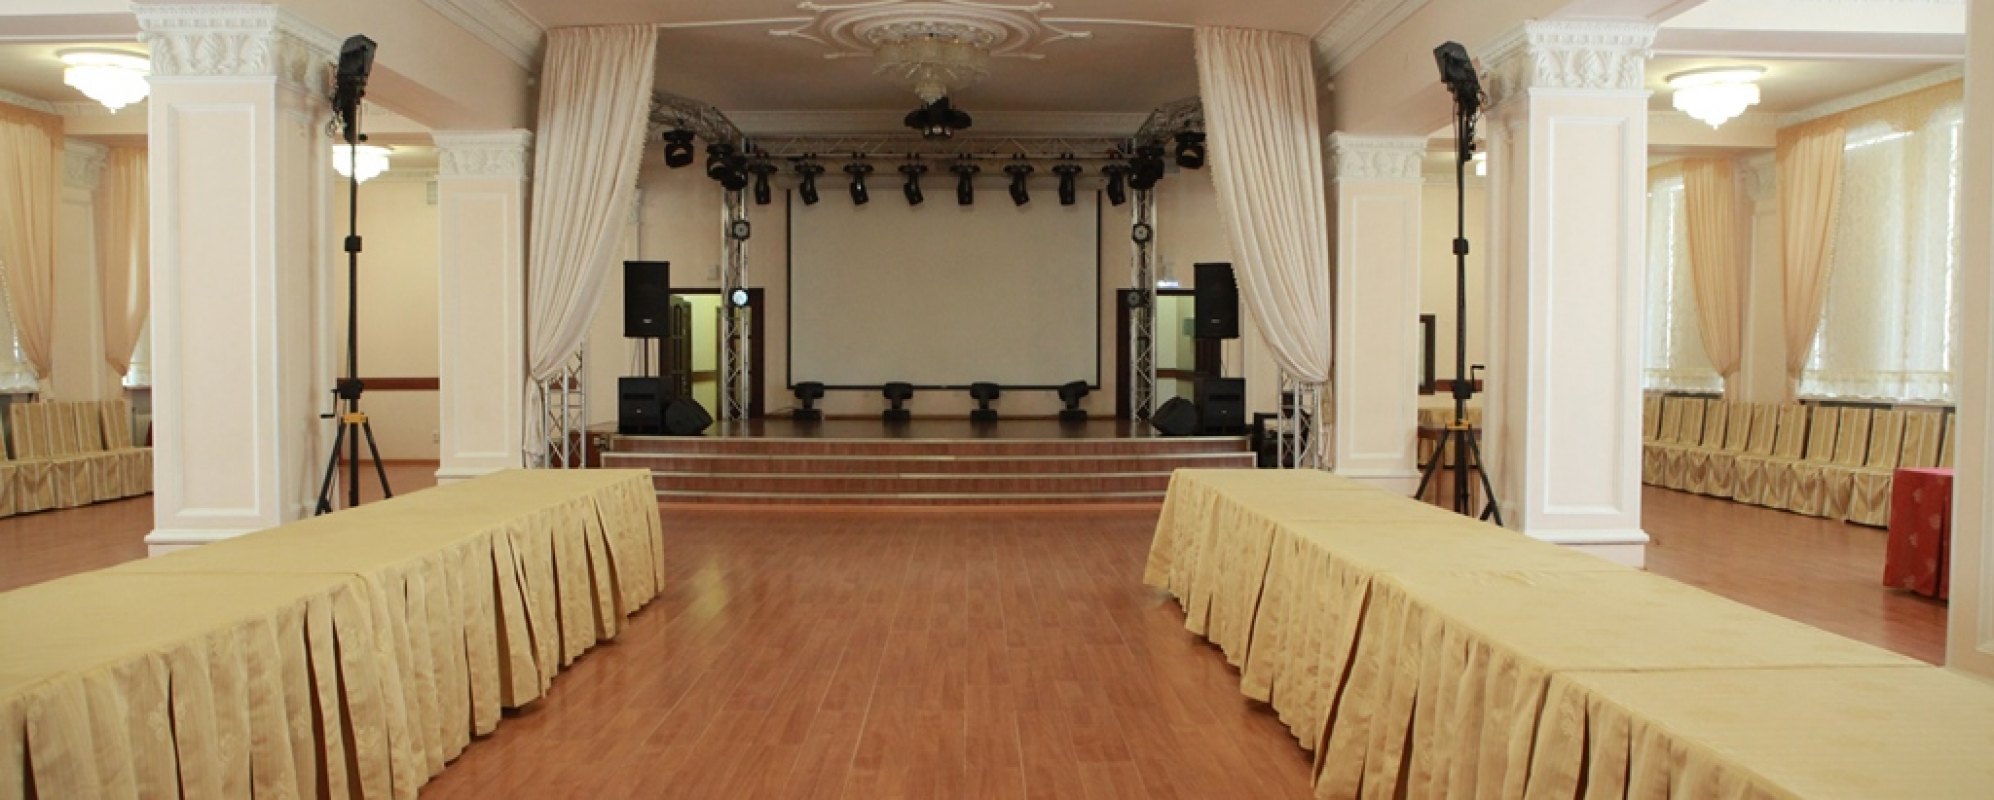 Фотографии концертного зала Танцевальный зал МКЦ ТПУ